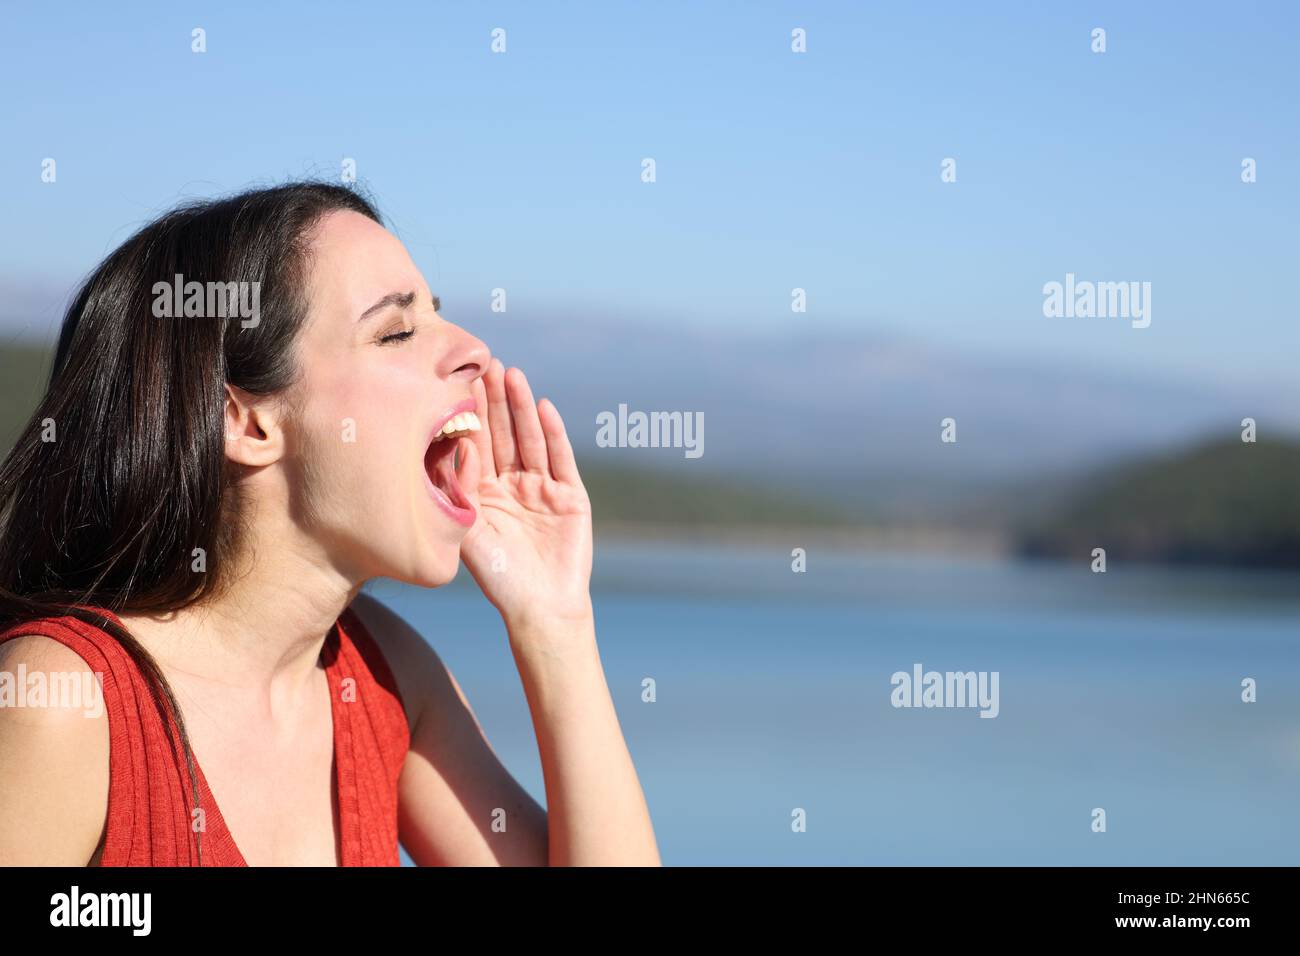 Ritratto laterale di una donna che urla forte in un lago Foto Stock